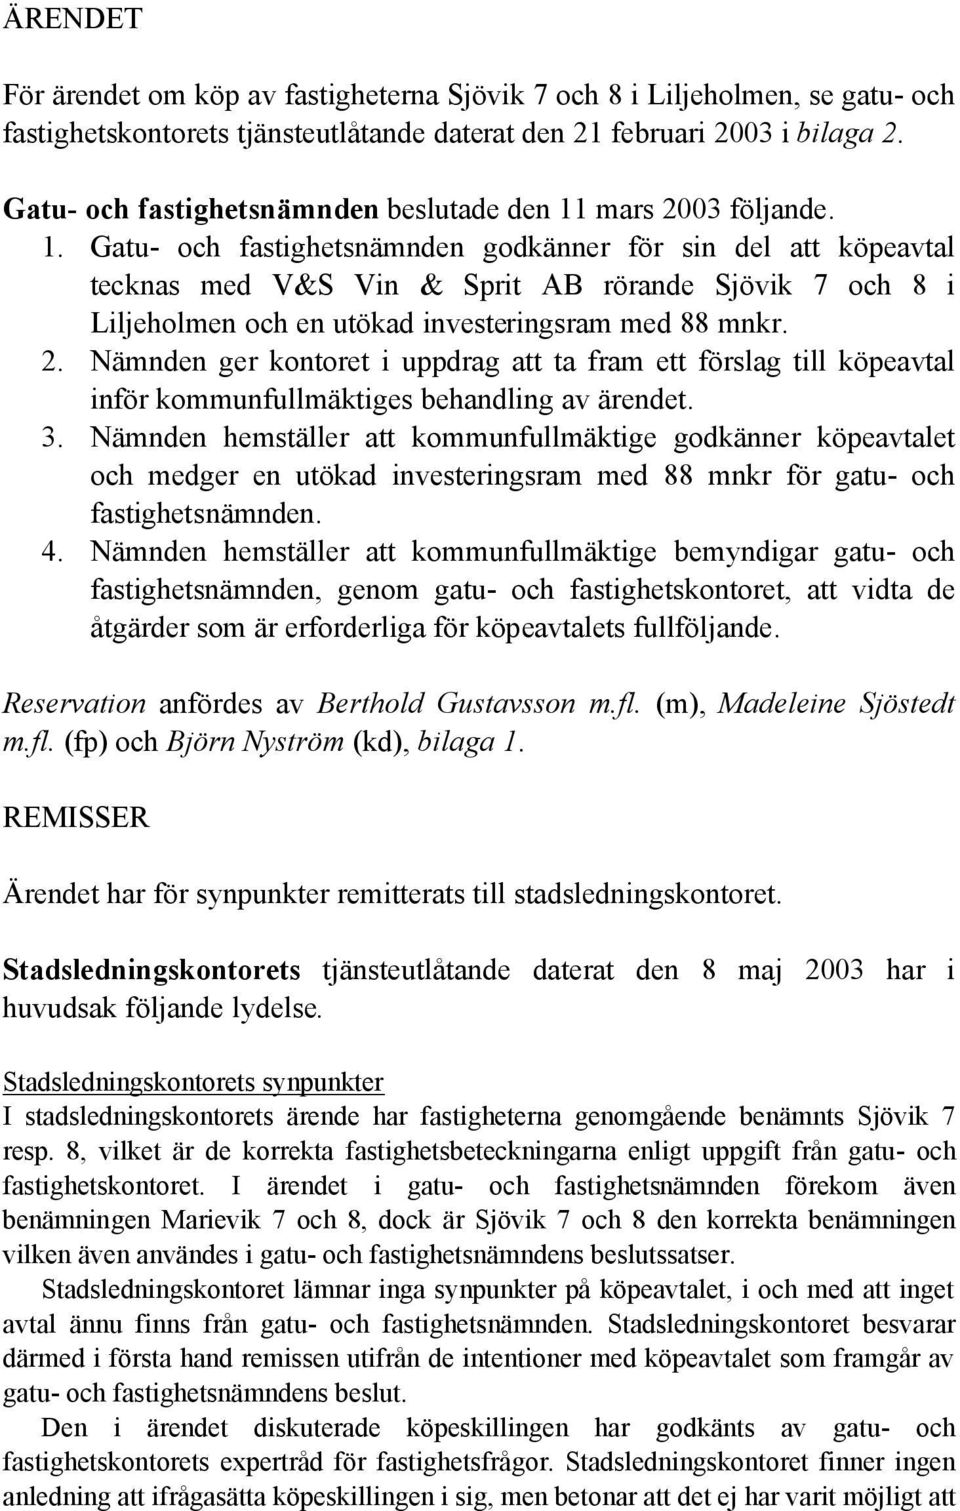 mars 2003 följande. 1. Gatu- och fastighetsnämnden godkänner för sin del att köpeavtal tecknas med V&S Vin & Sprit AB rörande Sjövik 7 och 8 i Liljeholmen och en utökad investeringsram med 88 mnkr. 2. Nämnden ger kontoret i uppdrag att ta fram ett förslag till köpeavtal inför kommunfullmäktiges behandling av ärendet.